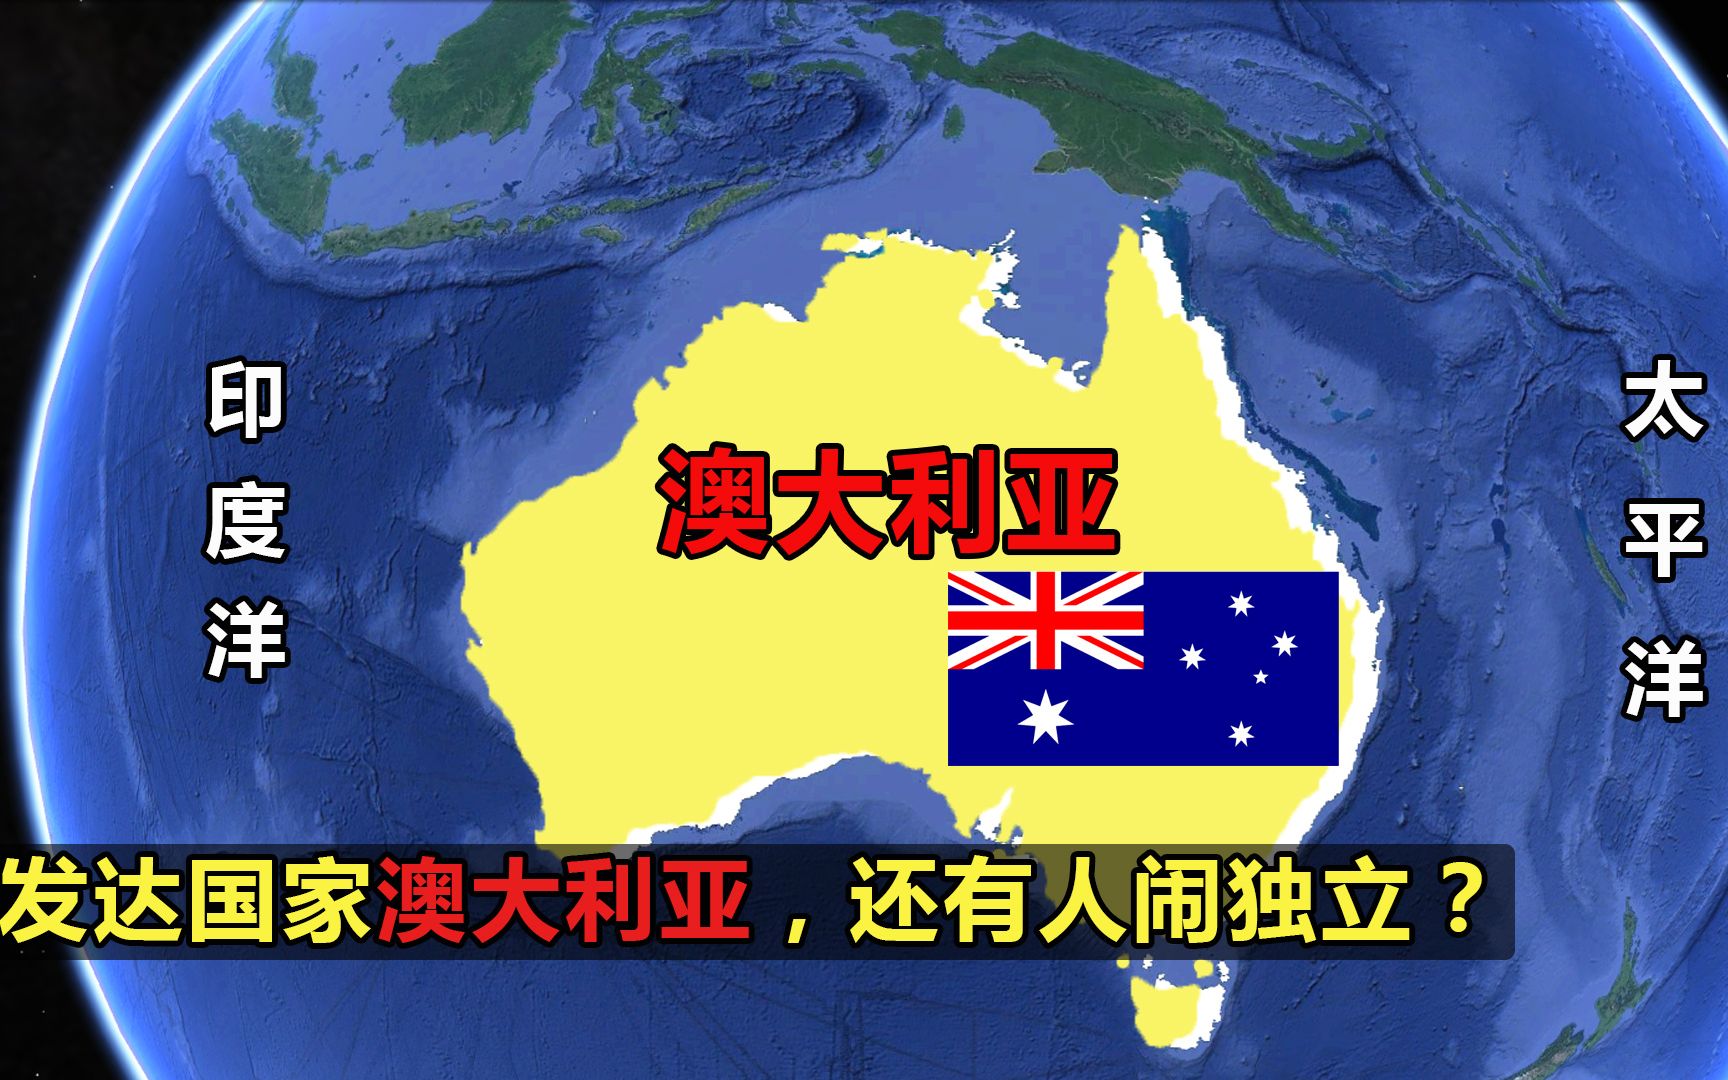 澳大利亚独占一个大陆的国家物产资源丰富还有人呼吁脱澳